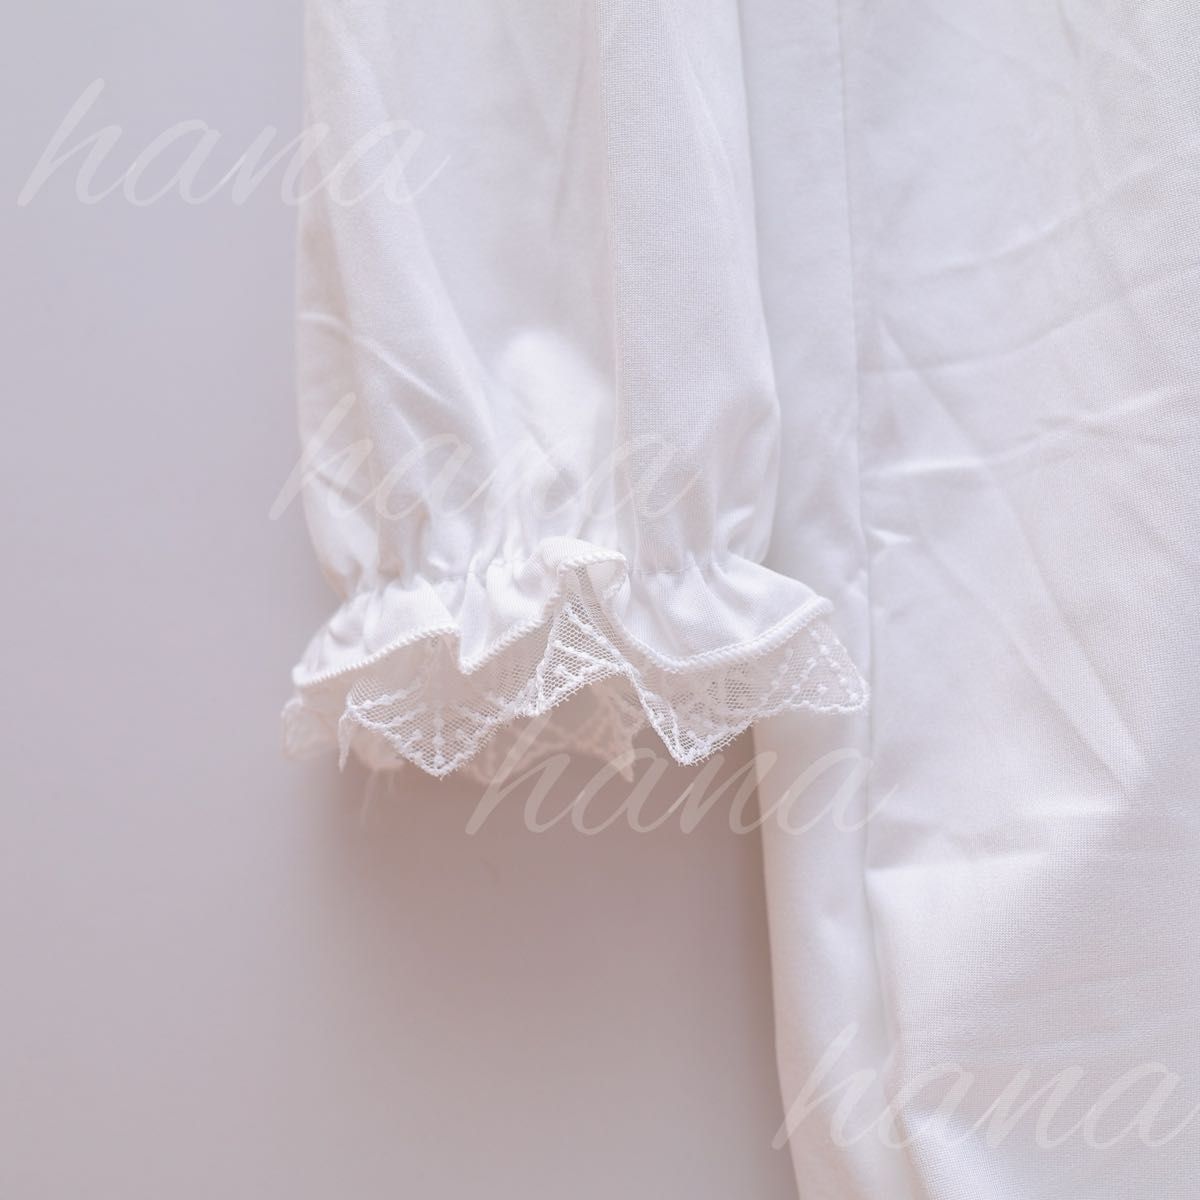 ナイトウェア ワンピース レディース ネグリジェ パジャマ ワンピース 白 長袖 部屋着 可愛い ホワイト